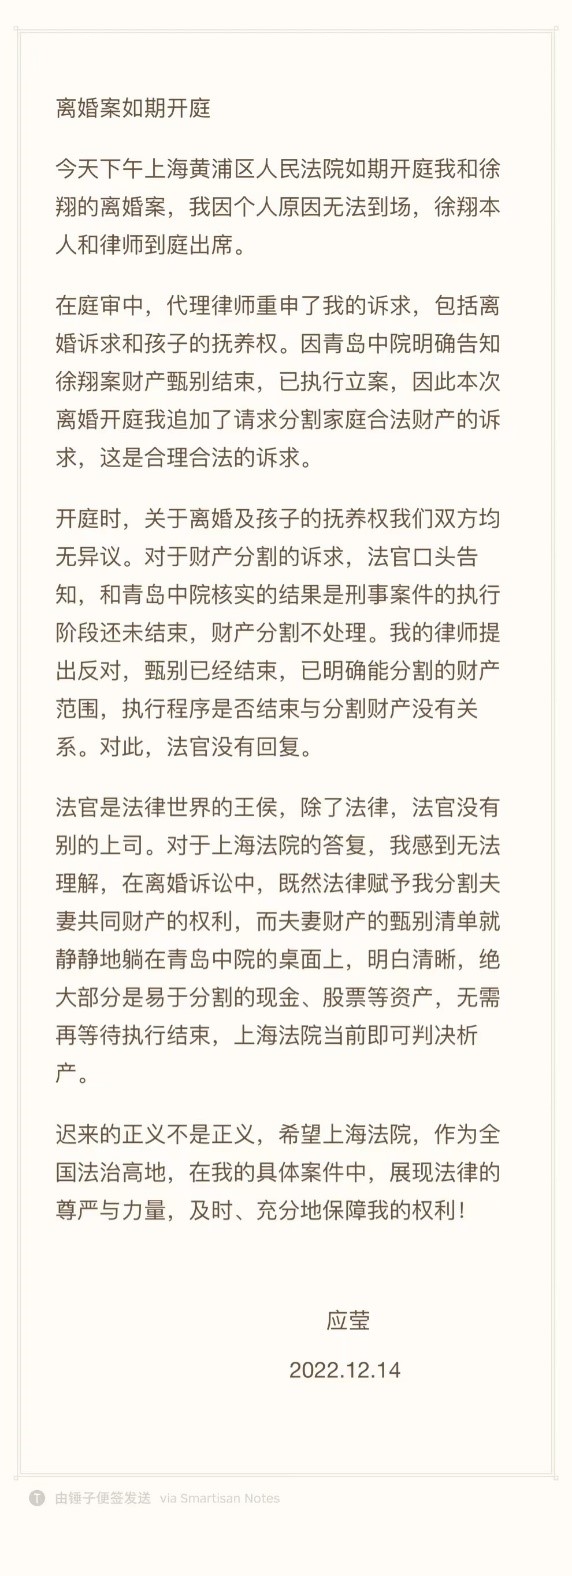 應瑩離婚案今日開庭未當場宣判， 徐翔全程在場